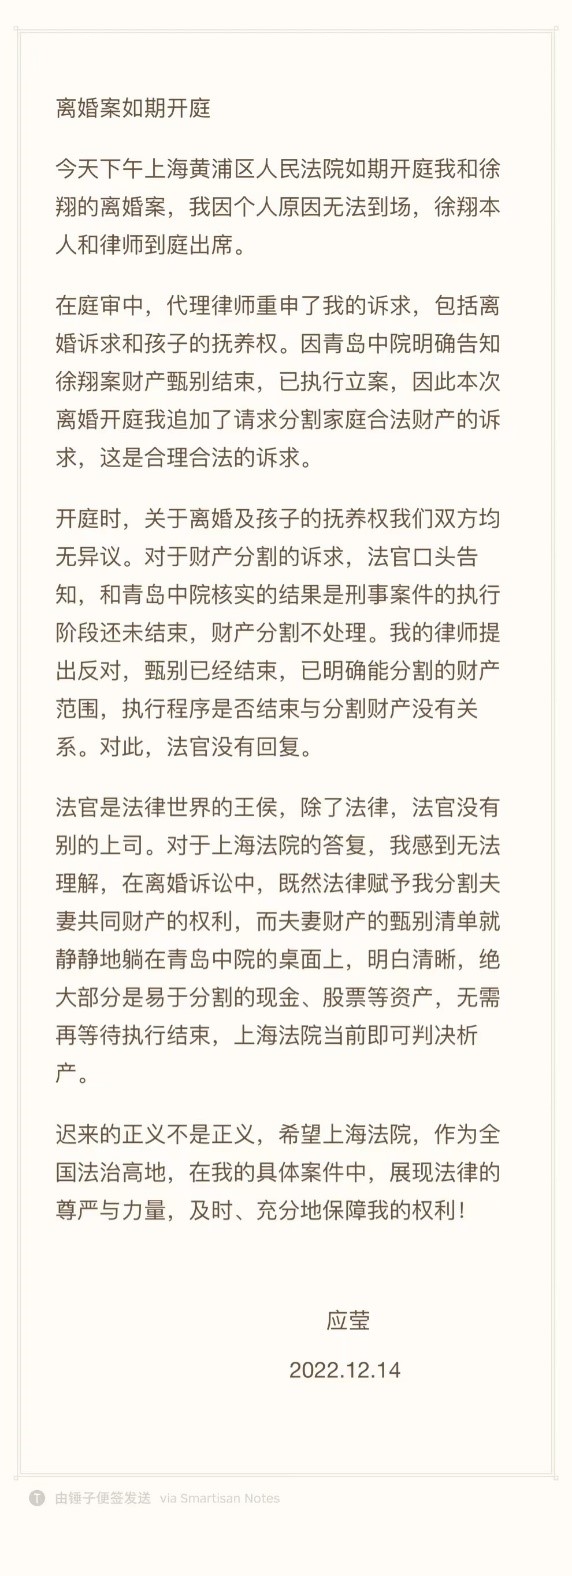 應瑩離婚案今日開庭未當場宣判， 徐翔全程在場